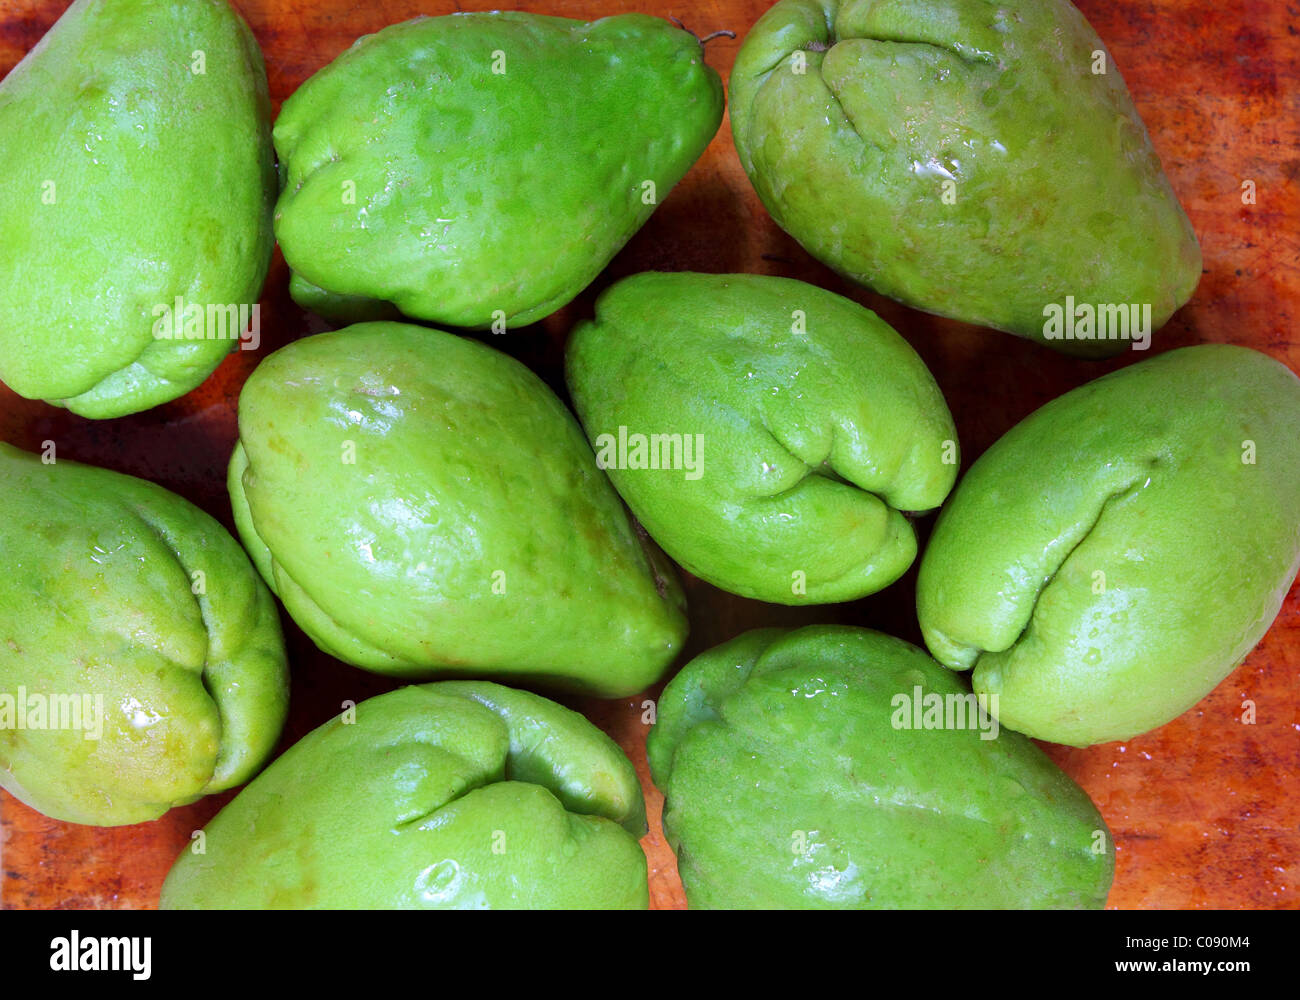 chayote mango fruit squash mirliton vegetable Stock Photo